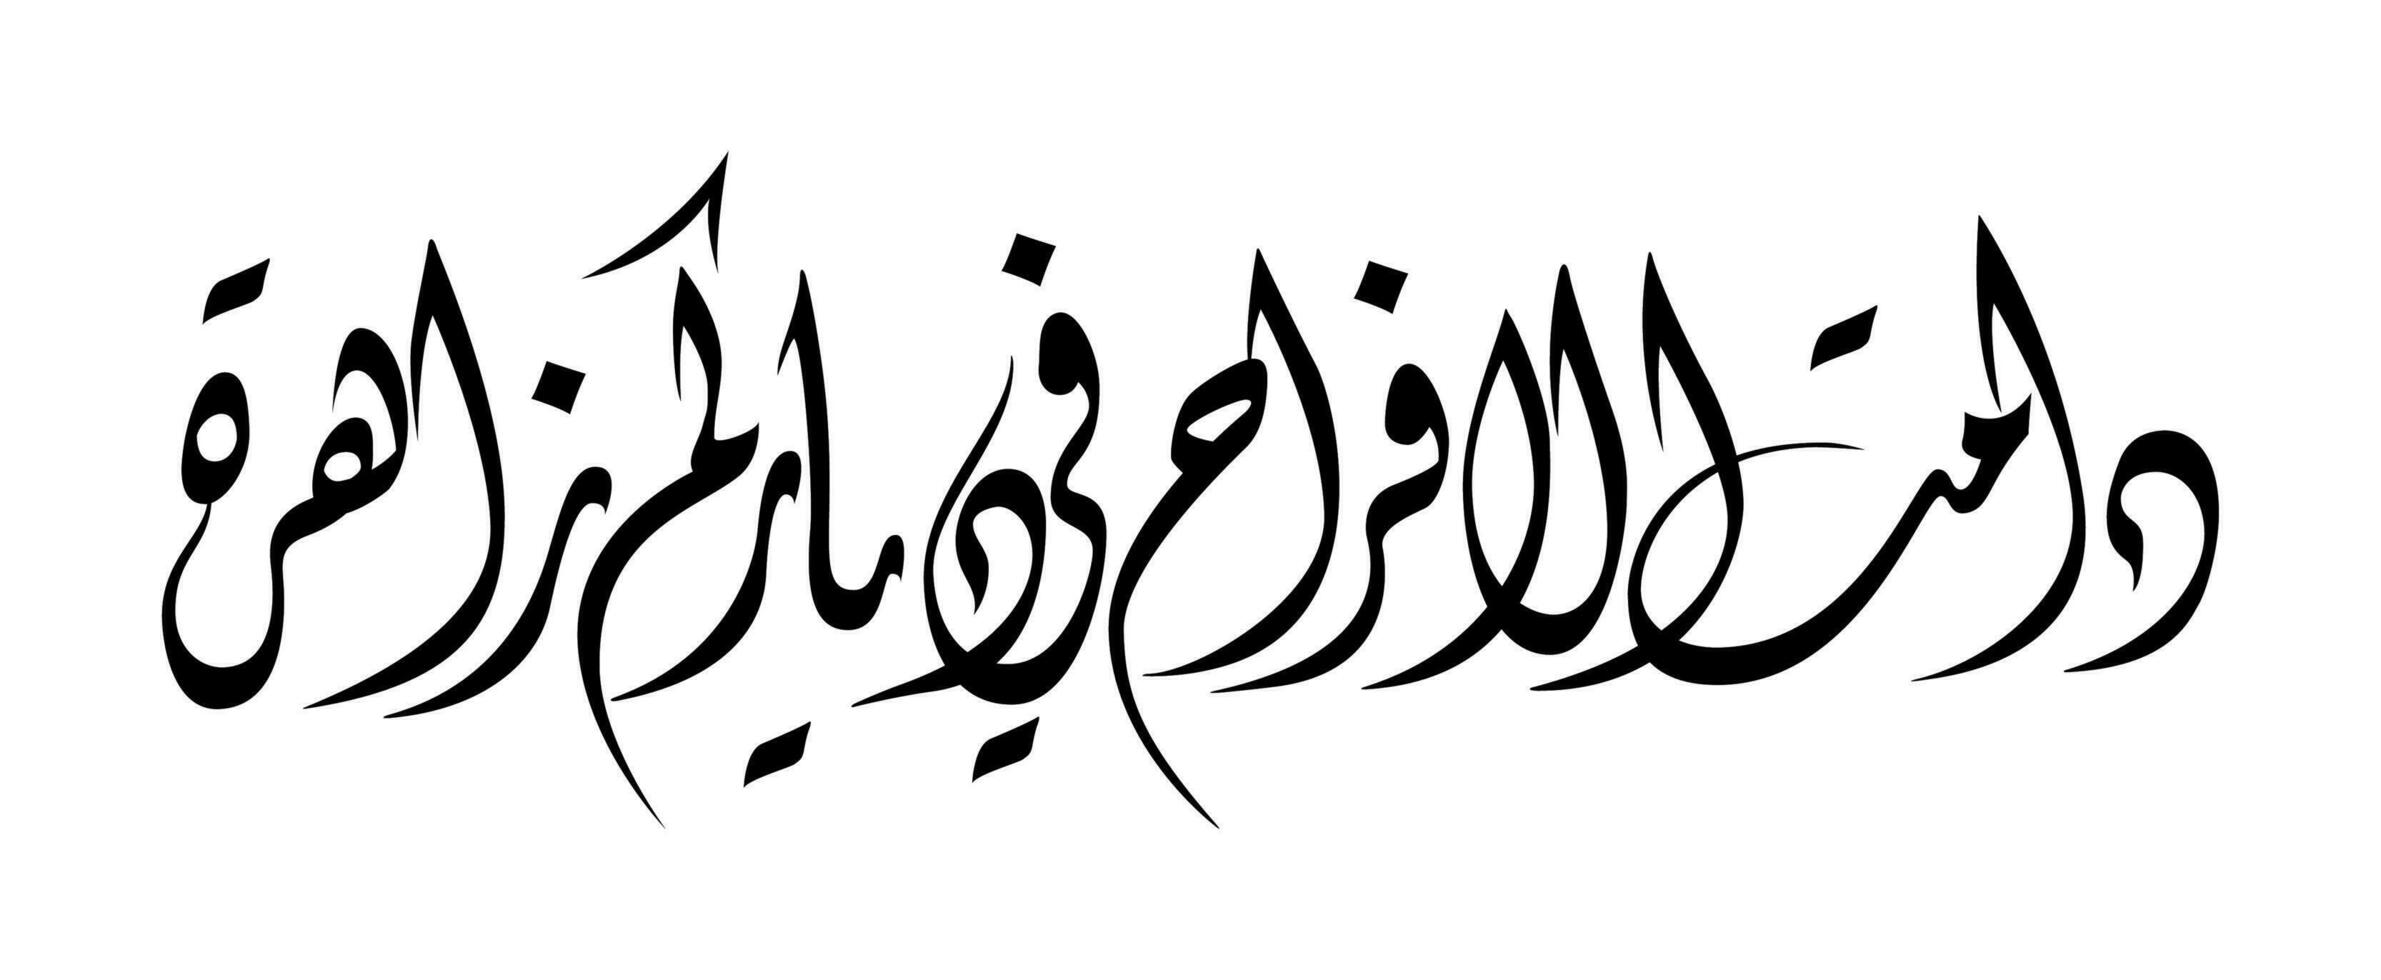 Arabo calligrafia saluto per vacanze e eventi vettore